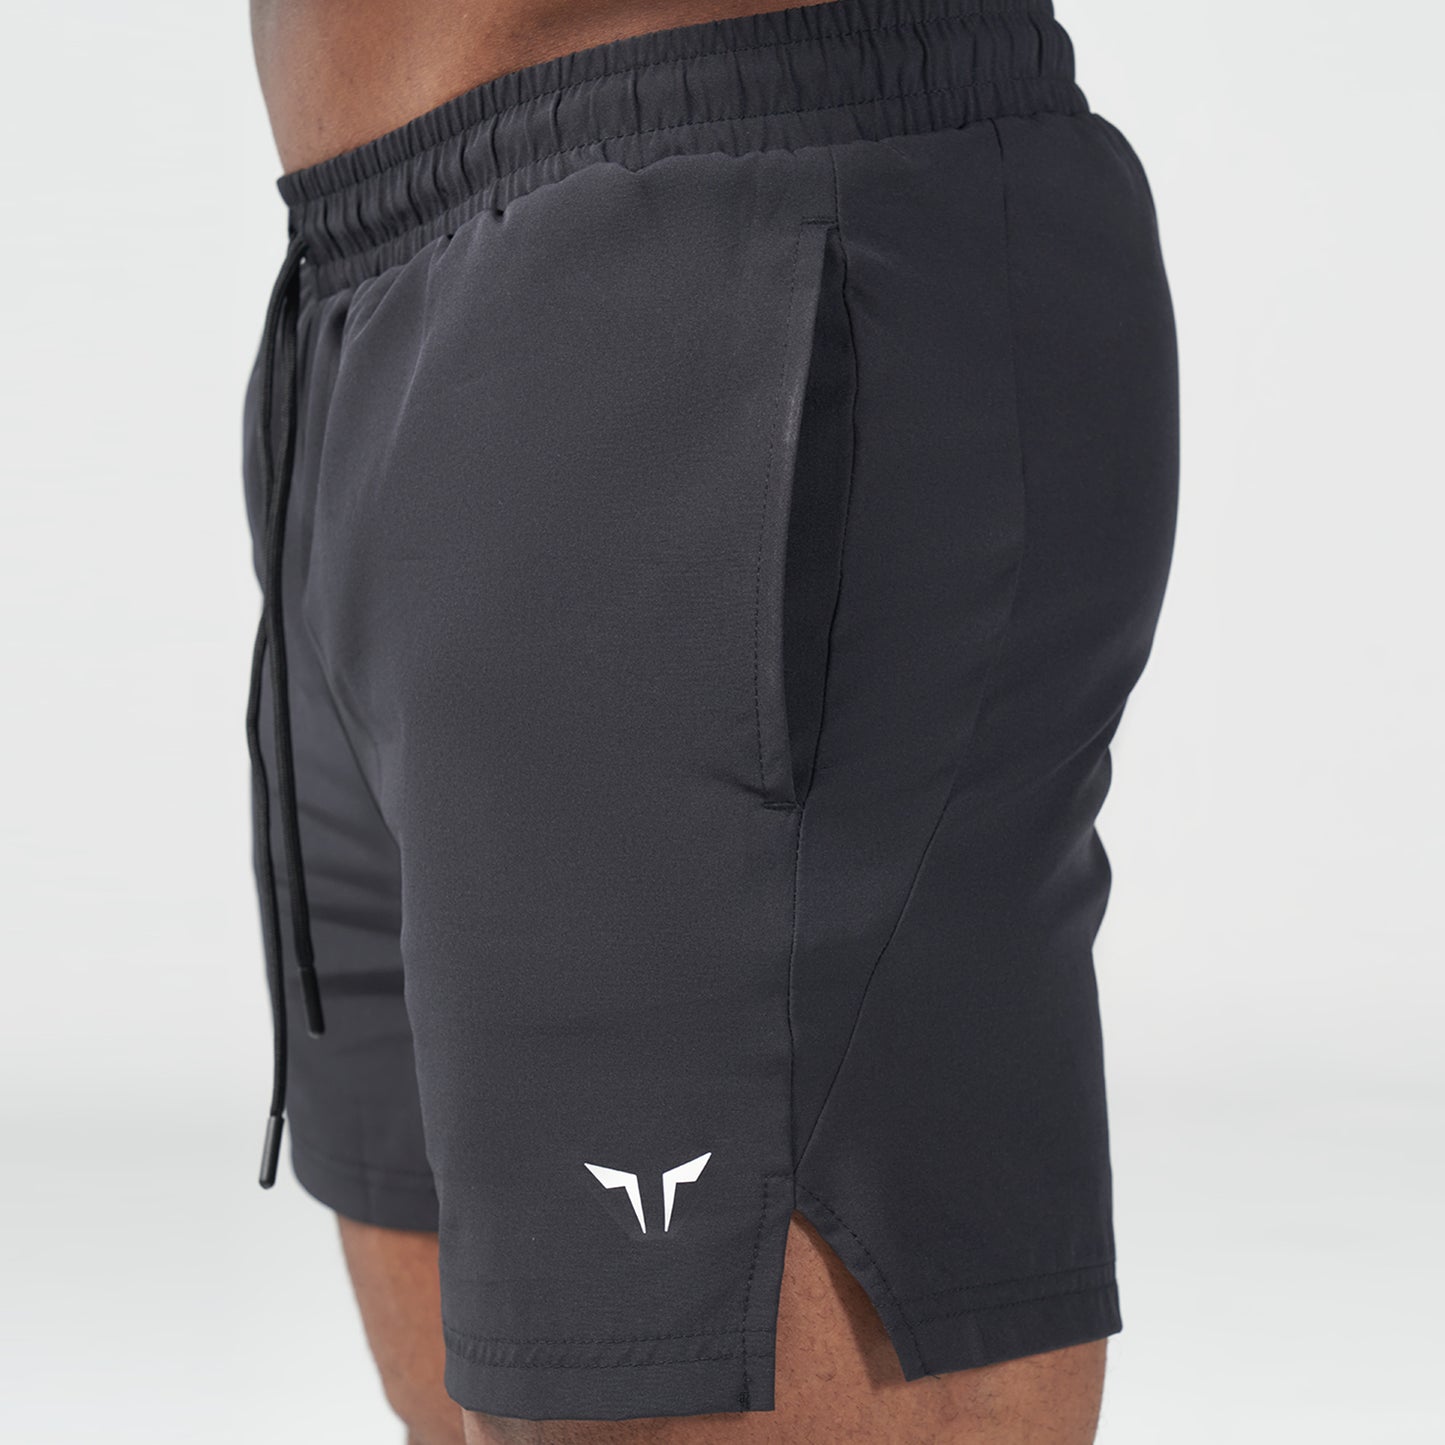 AE | Essential 5 Inch Shorts - Black | Gym Shorts Men | SQUATWOLF